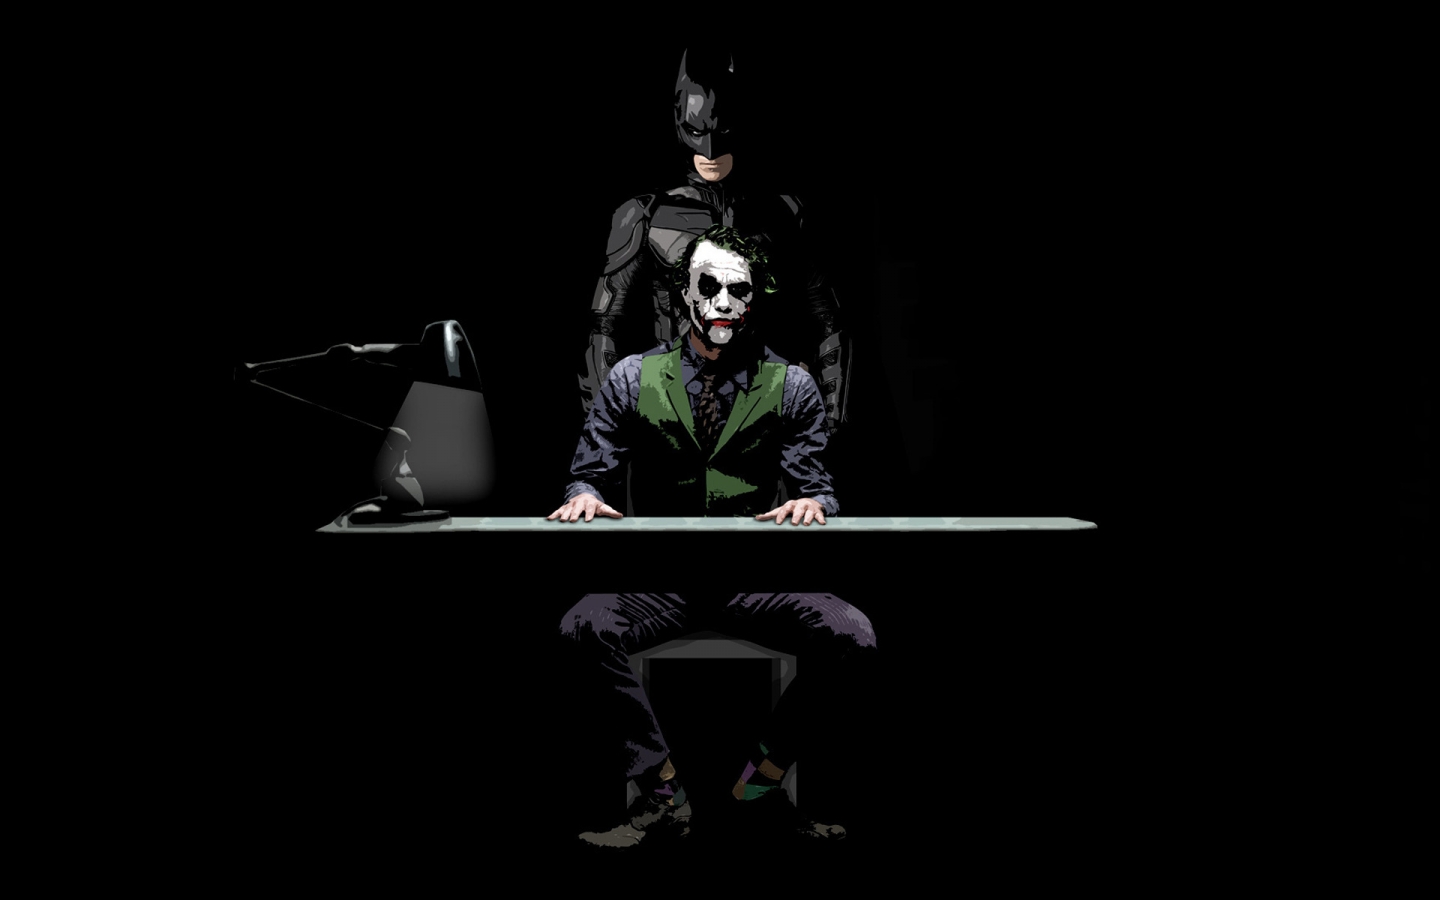 Batman and Joker Sketch for 1440 x 900 widescreen resolution